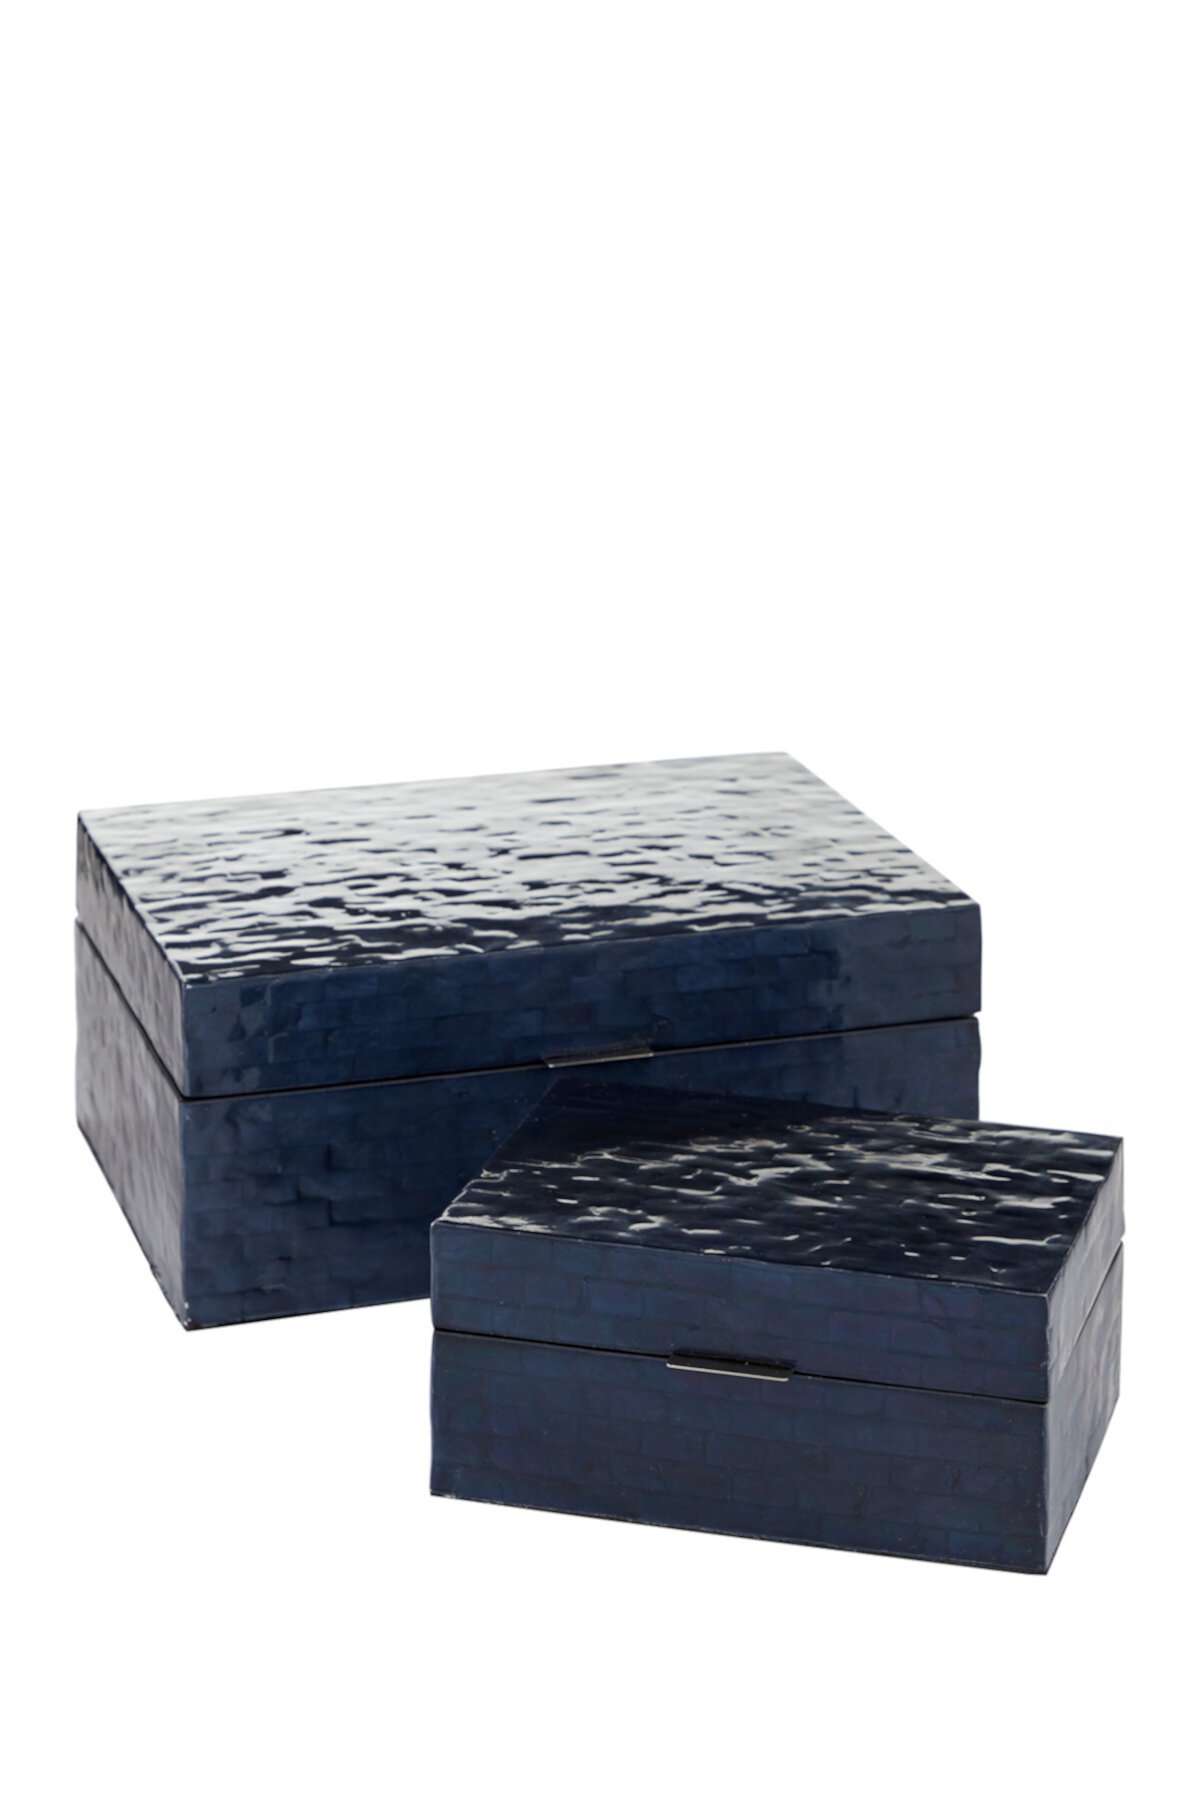 Коробка Blue Capiz Coastal - набор из 2 шт. Willow Row